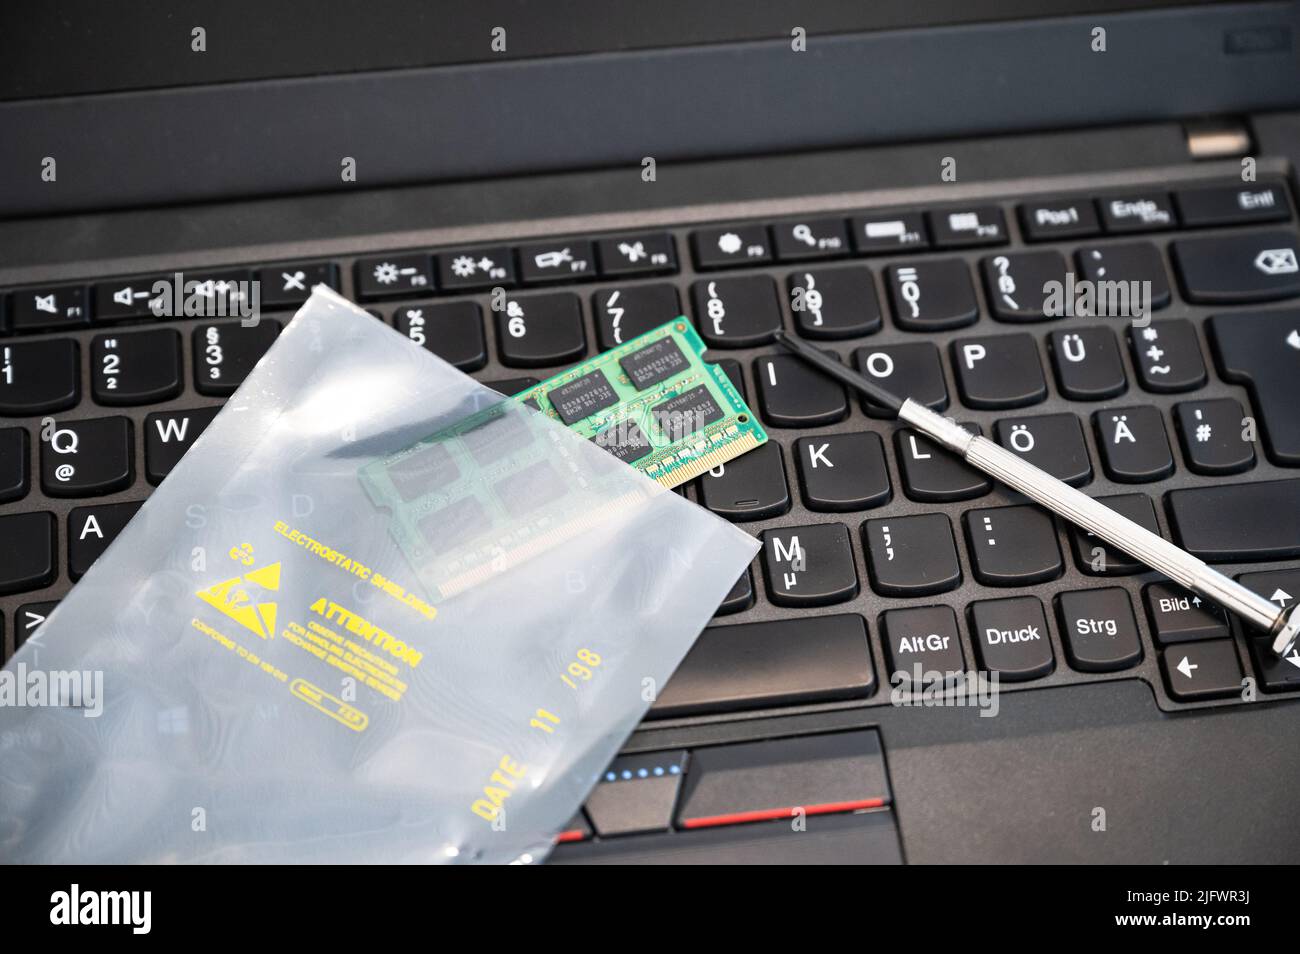 La RAM viene aggiornata e inserita in un imballaggio ESD sulla tastiera di un PC: L'imballaggio protegge i componenti elettronici sensibili dalle scariche elettrostatiche Foto Stock